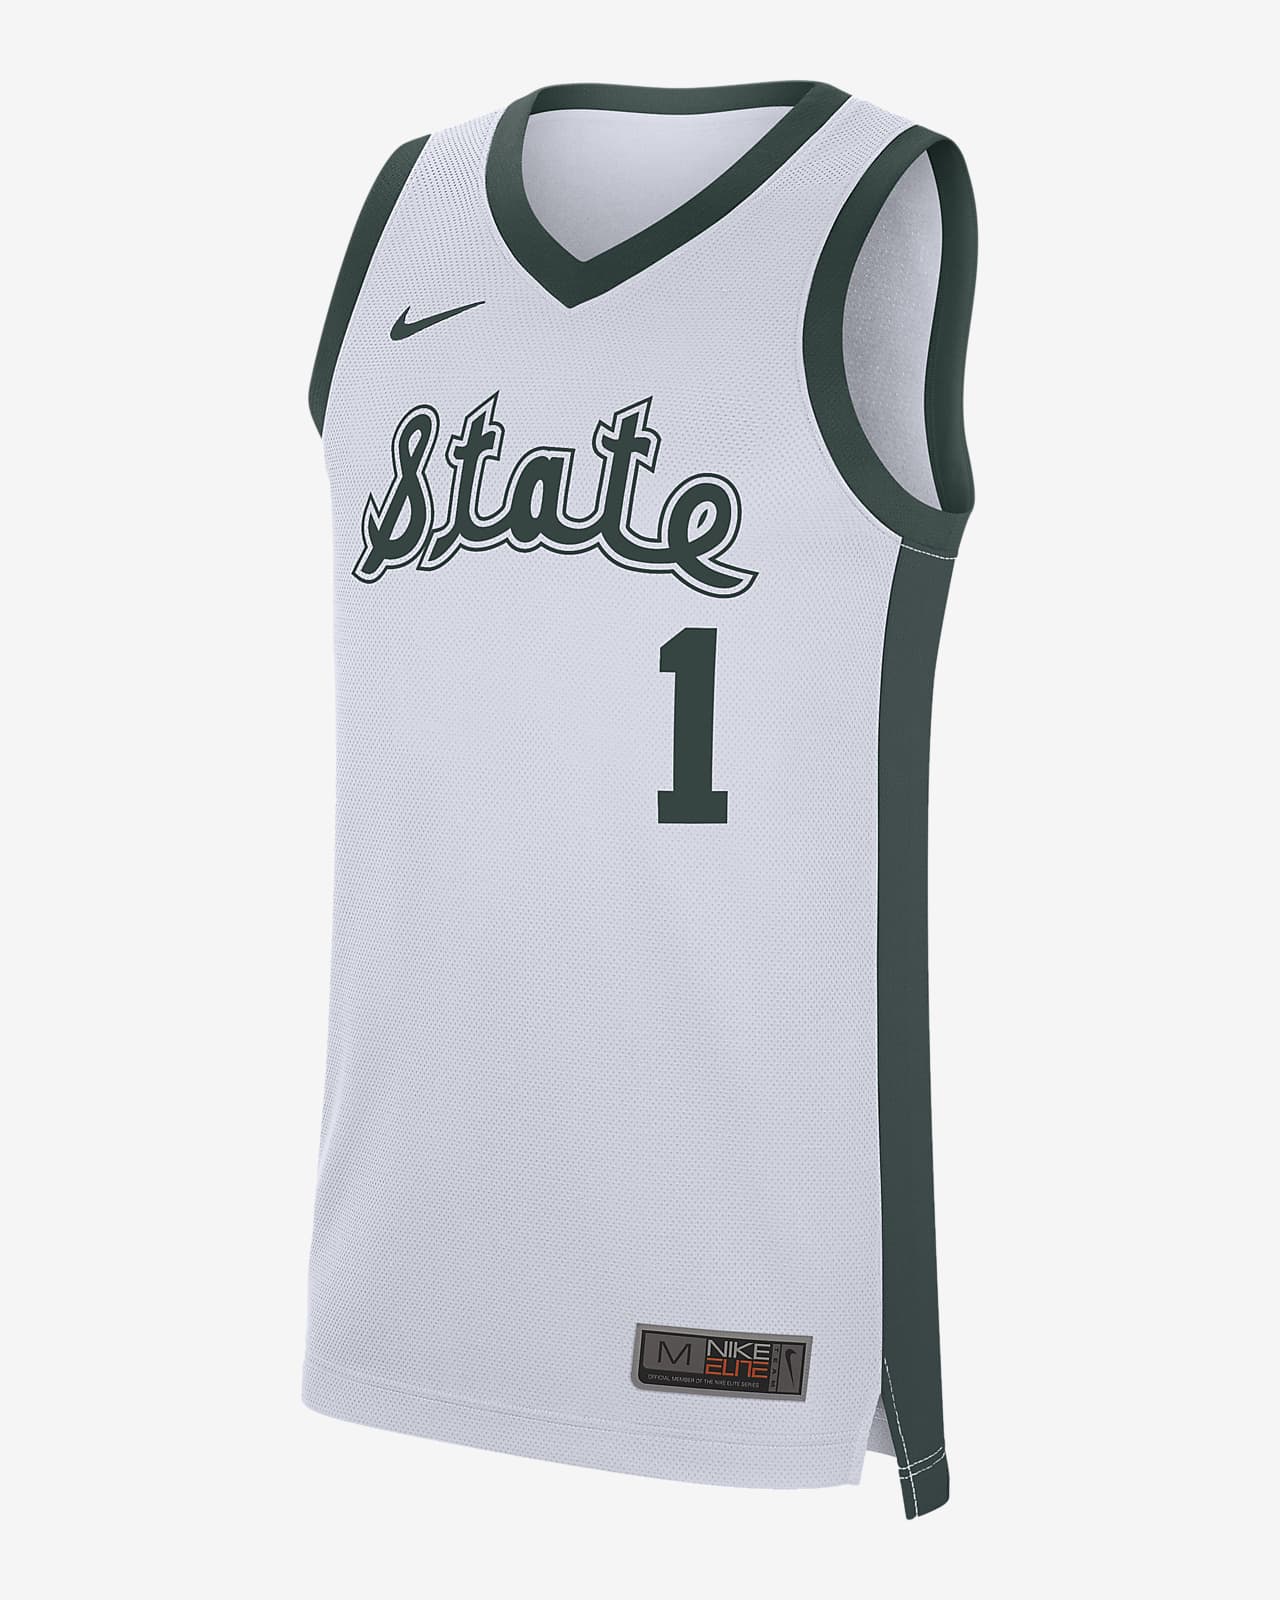 Nike College Replica Retro (Michigan State) Men's Basketball Jersey